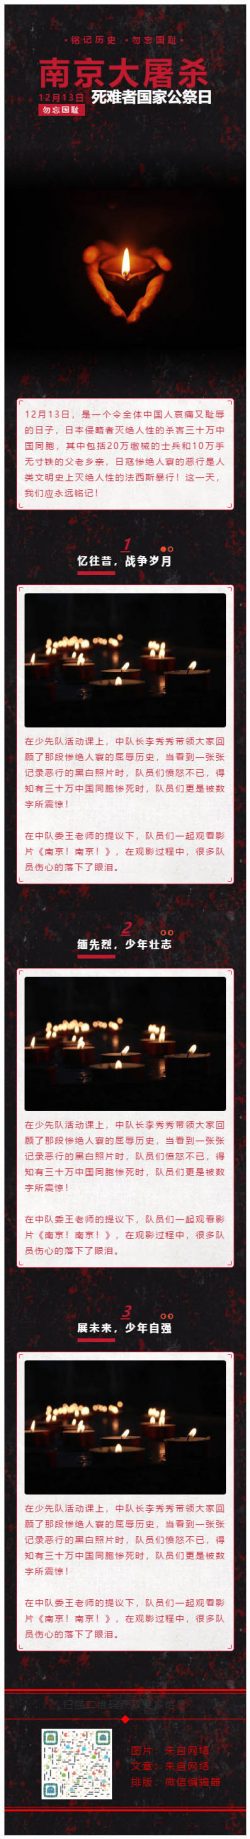 12月13日国家公祭日南京大屠杀纪念日哀悼黑色背景微信推文模板推送素材